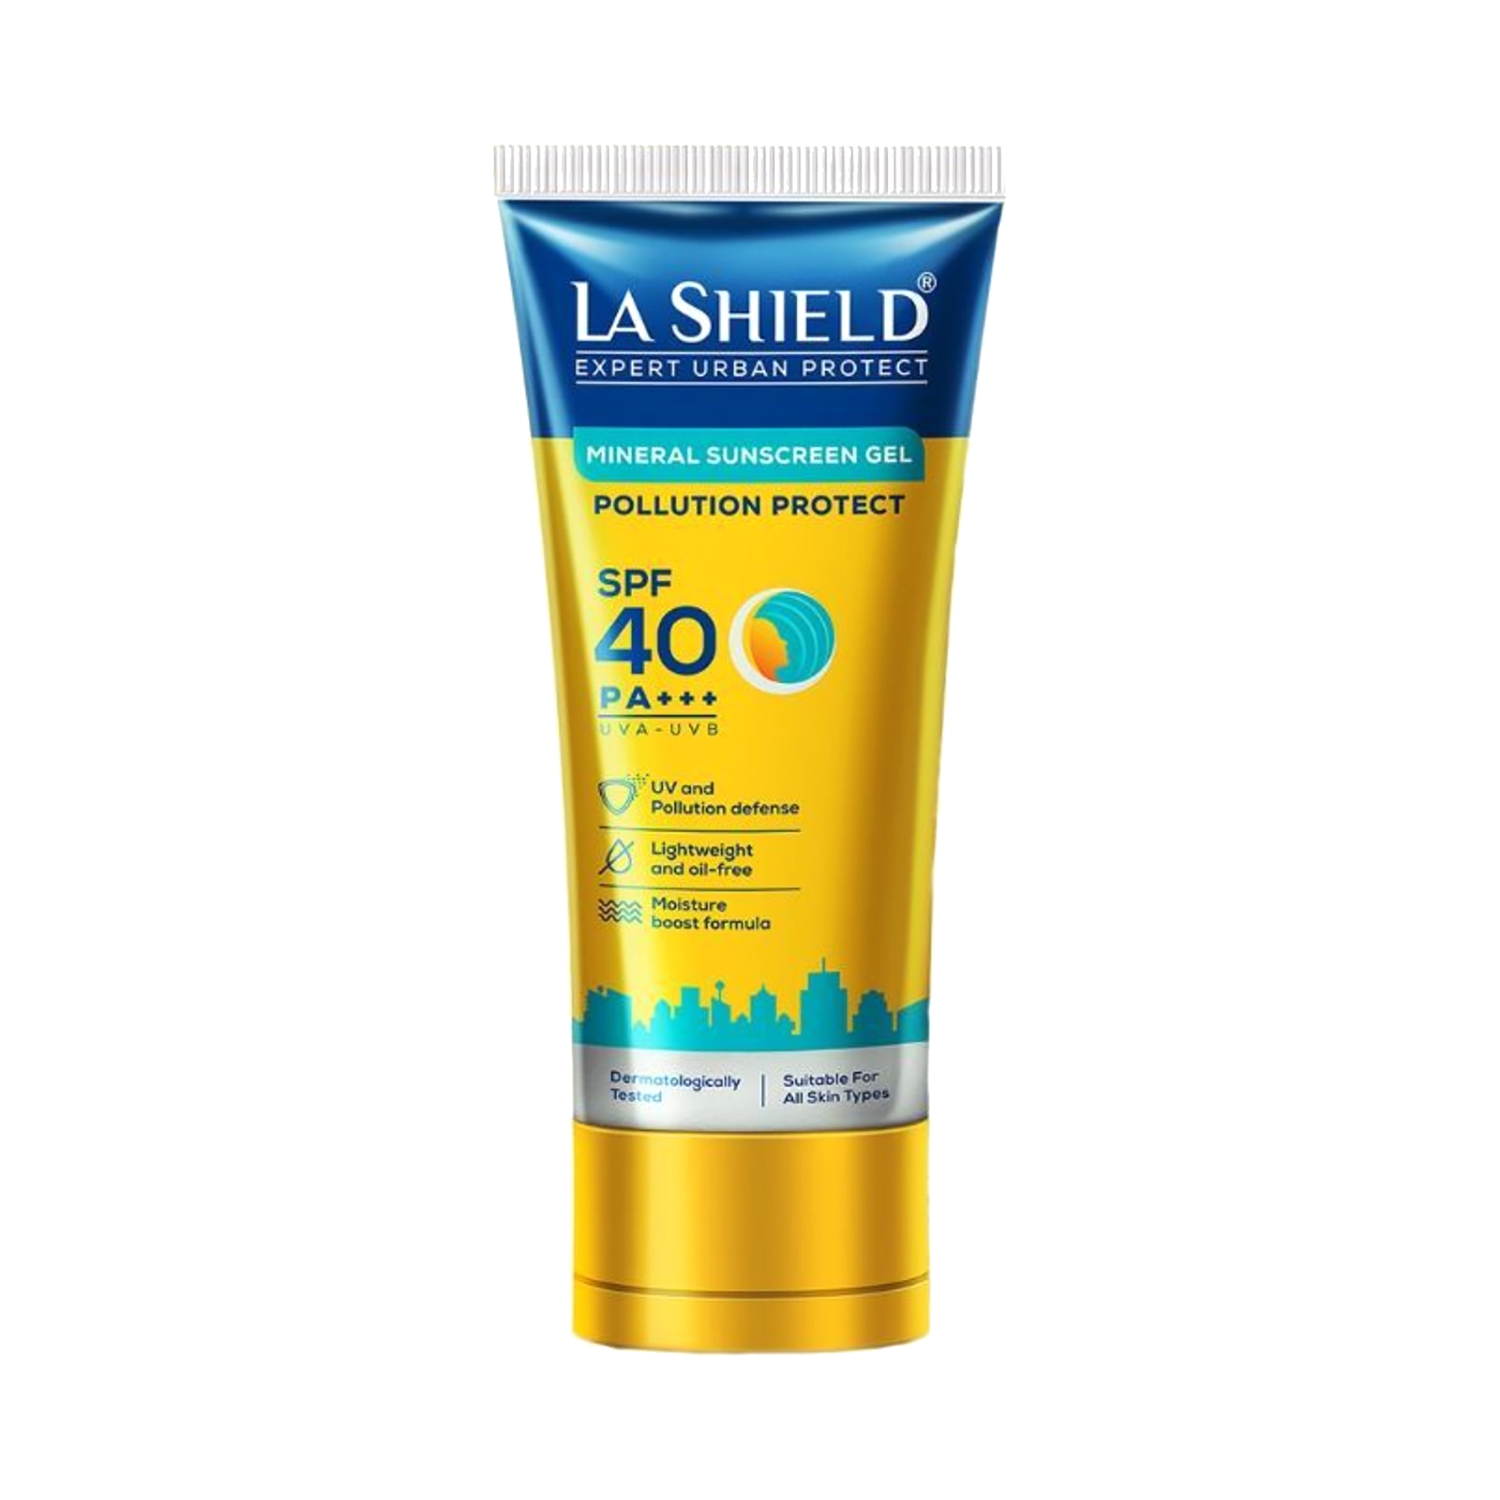 La Shield | La Shield Pollution Protect Mineral Sunscreen Gel SPF 40 (50g)